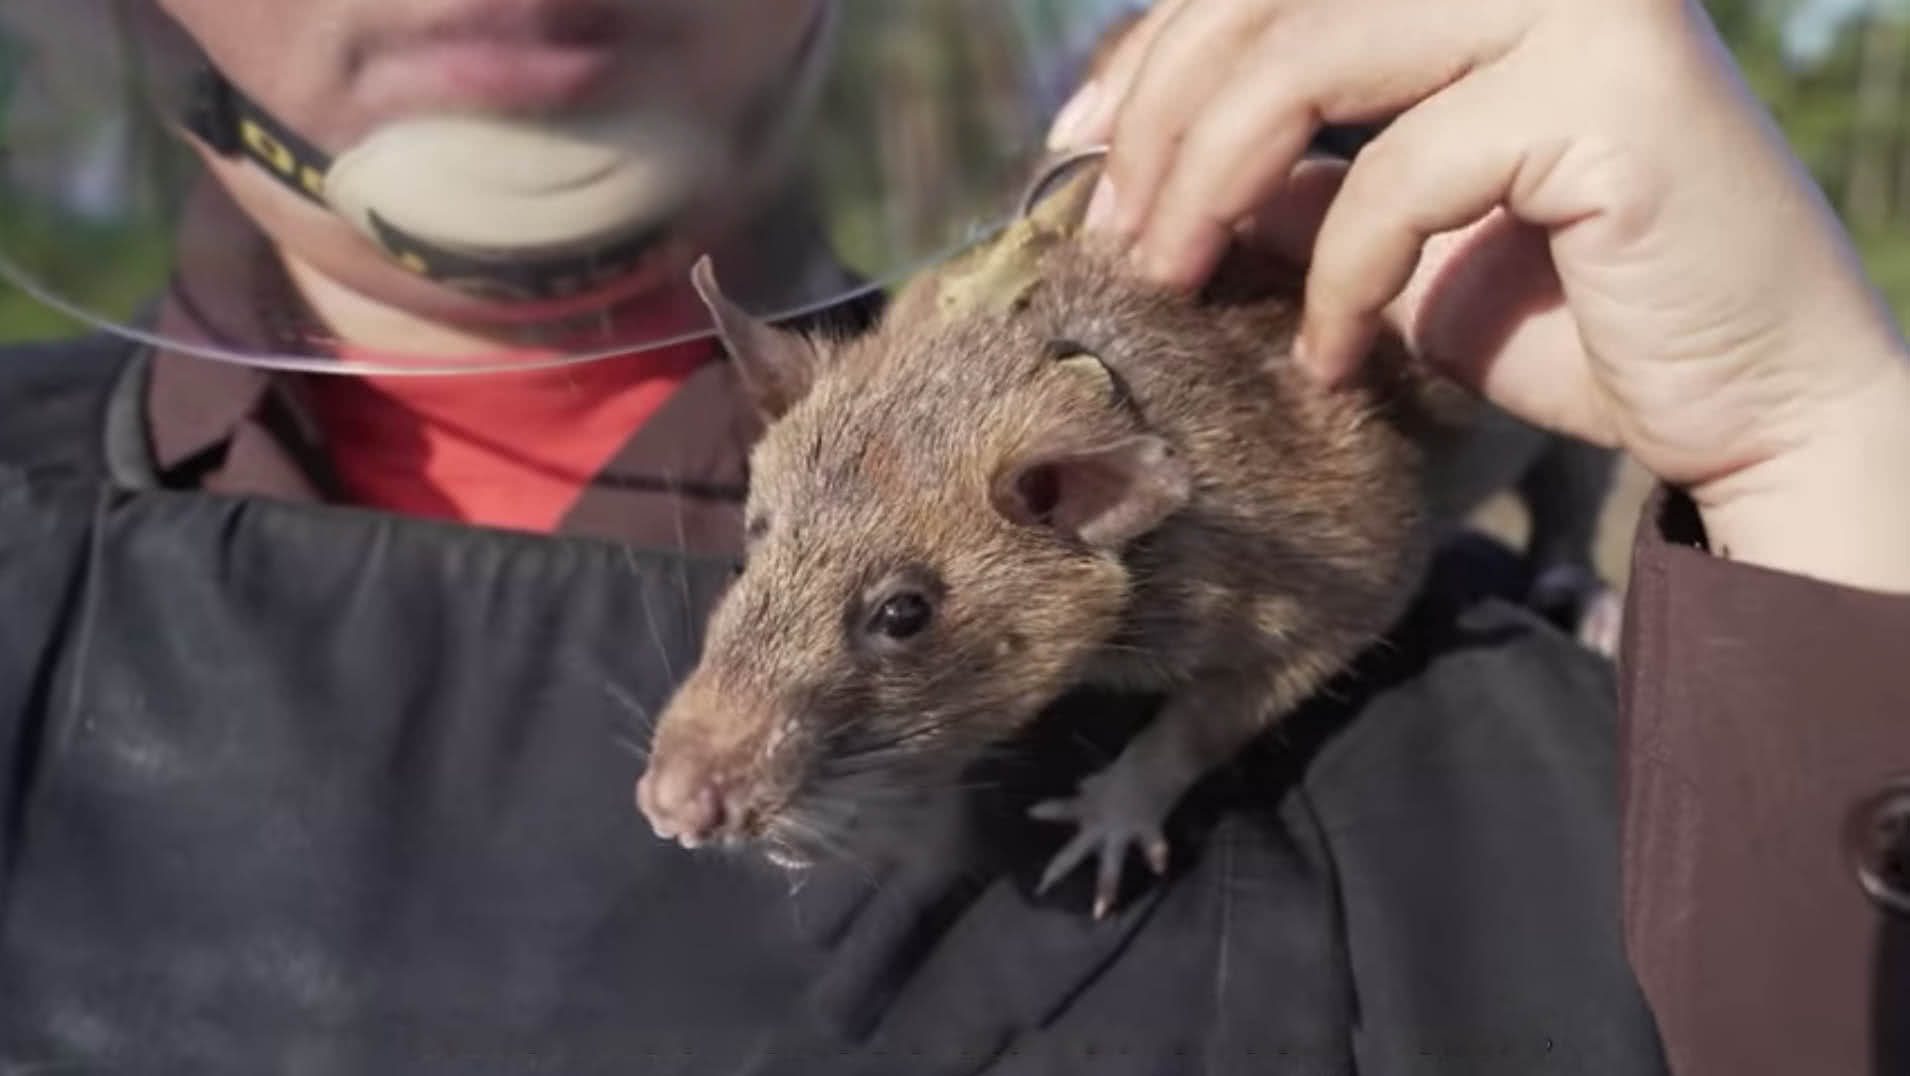 Magawa, o rato 'herói' que detecta minas terrestres se aposenta